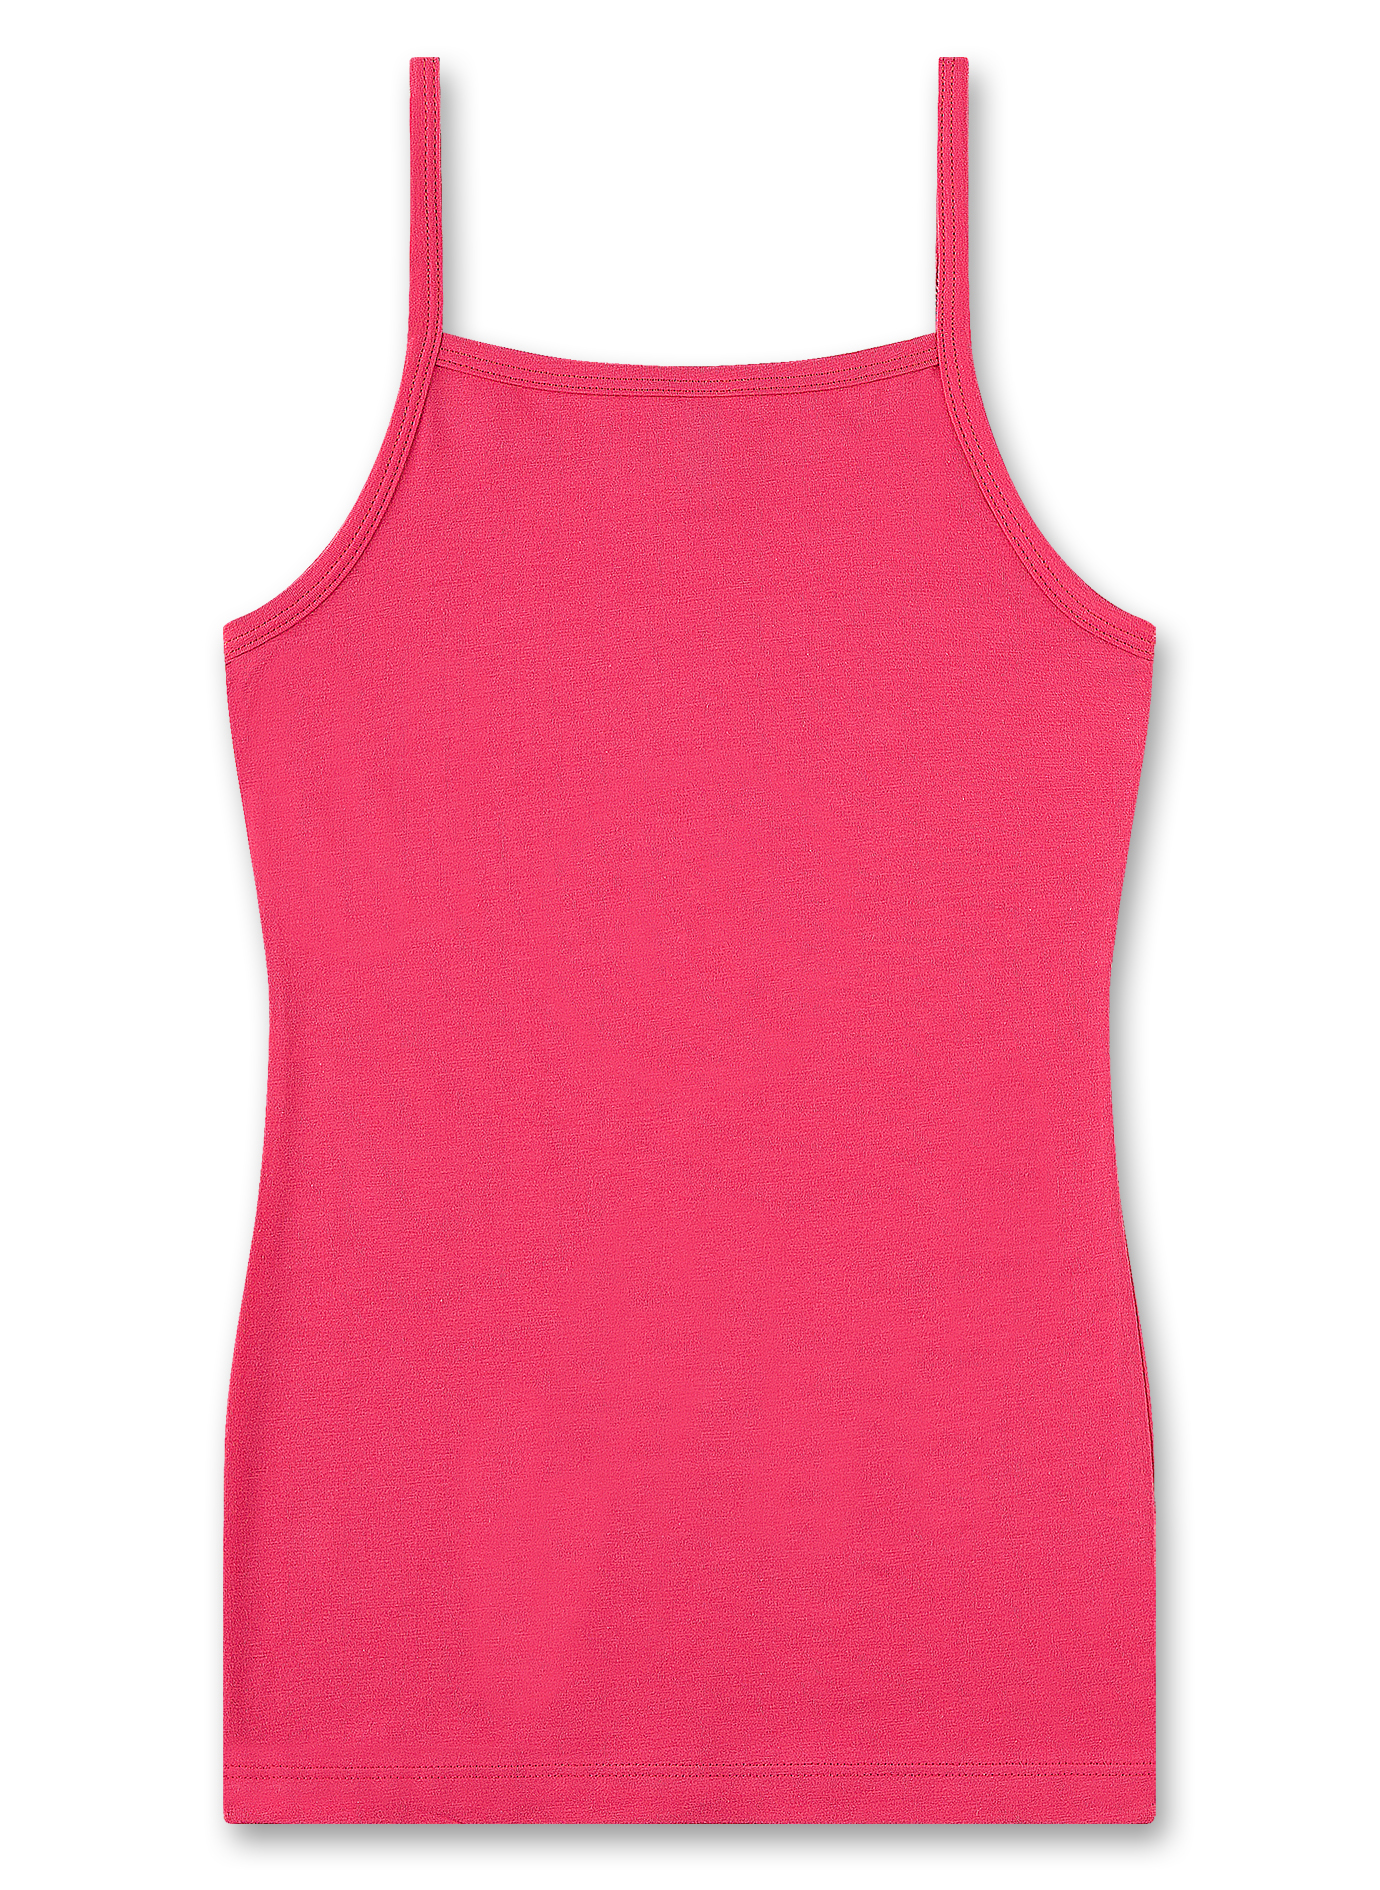 Mädchen-Unterhemd Pink